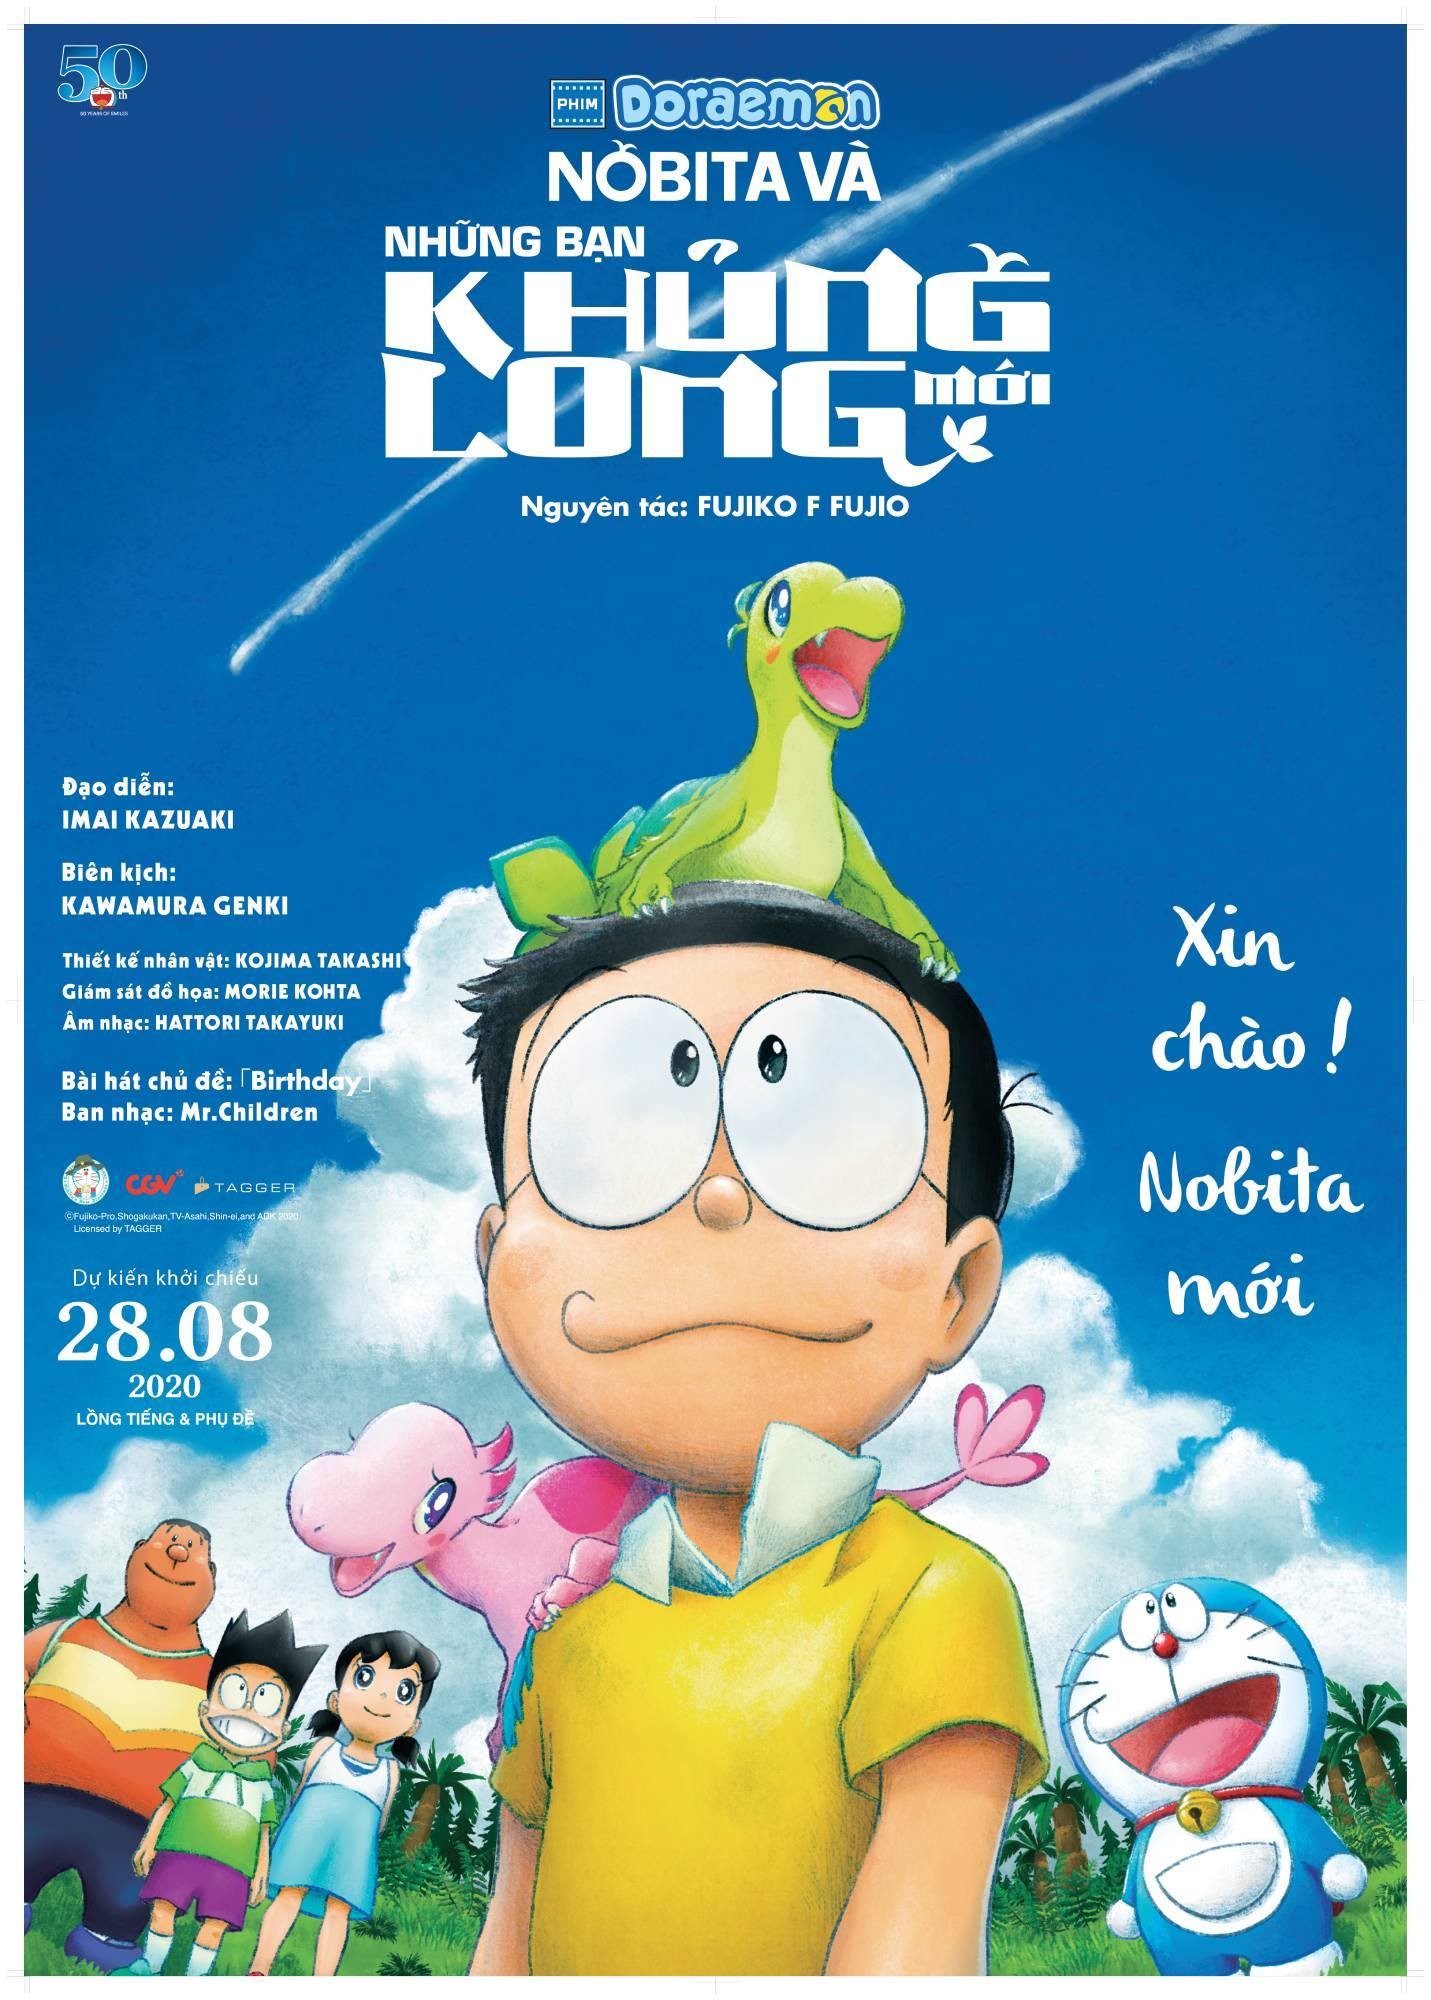 Doraemon, Nobita, khủng long: Hãy mạo hiểm vào thế giới thần tiên của Doraemon và Nobita, nơi mọi điều đều có thể xảy ra. Với những hình ảnh về khủng long đáng yêu và thú vị, bạn sẽ được tiếp cận với những chuyến phiêu lưu đáng nhớ của hai người bạn thân thiết. Hãy xem ngay và chuẩn bị cho một chuyến hành trình đầy kì diệu!